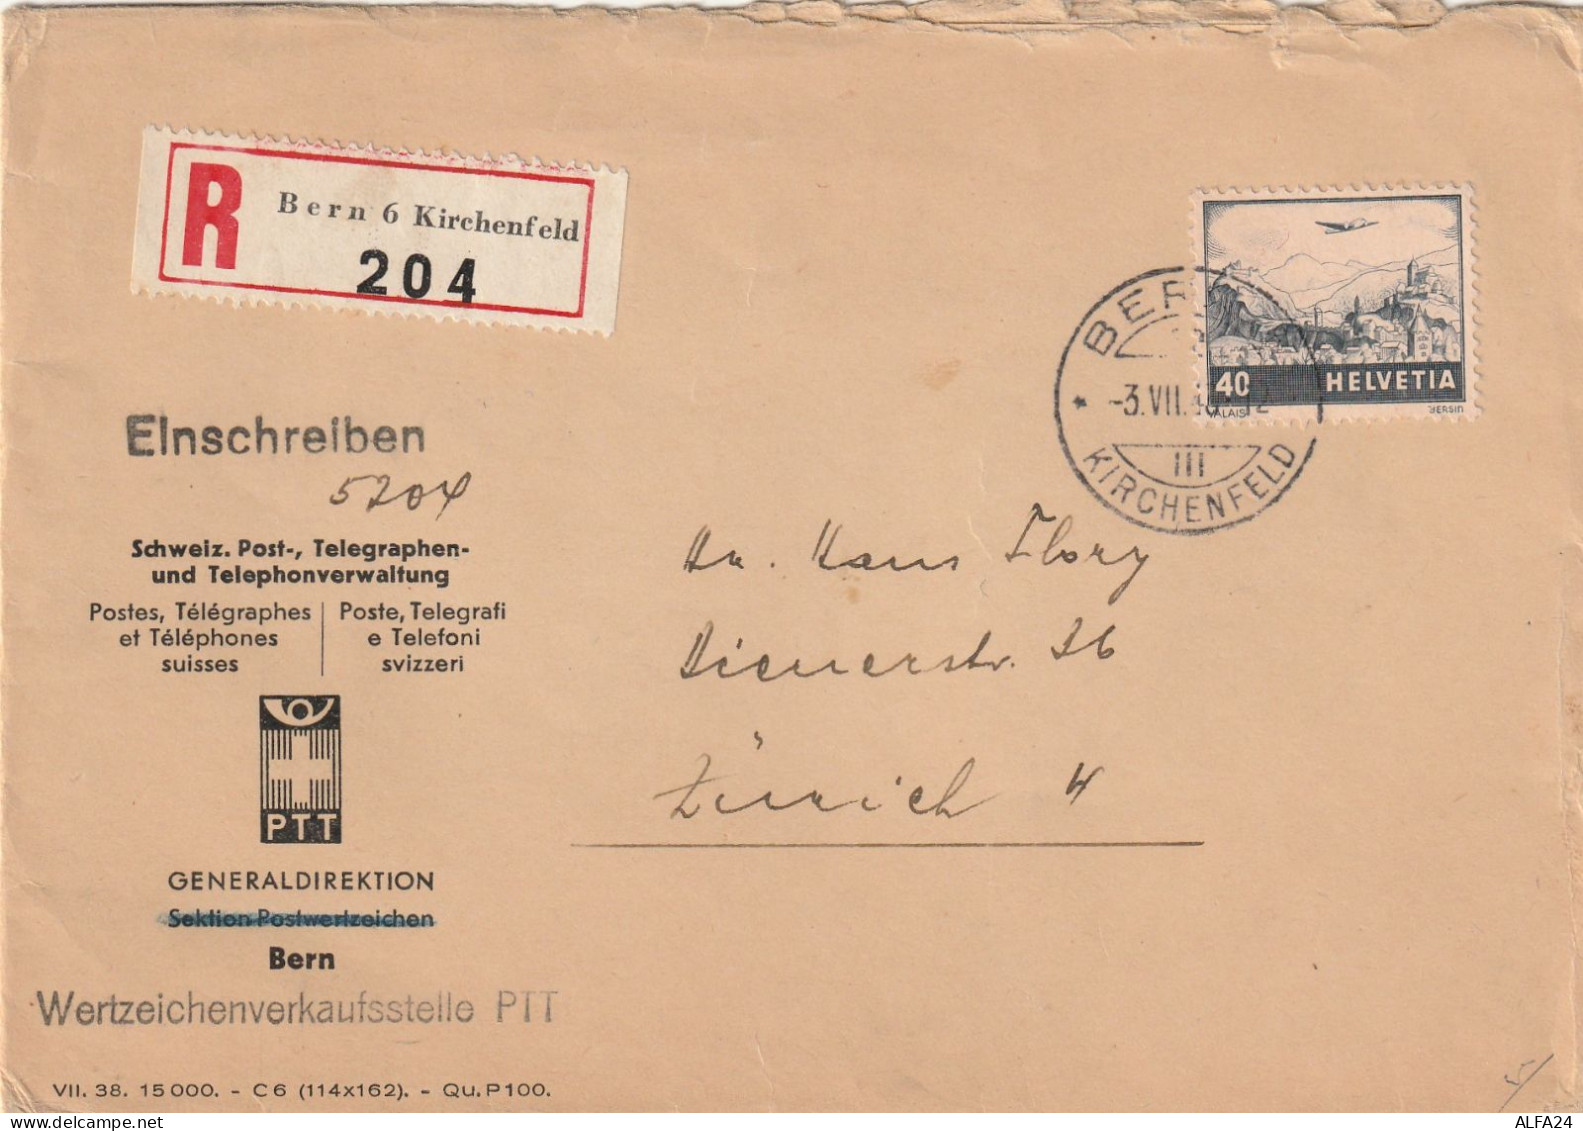 RACCOMANDATA SVIZZERA 1943 40 TIMBRO BERN KIRCHENFELD (YK24 - Covers & Documents